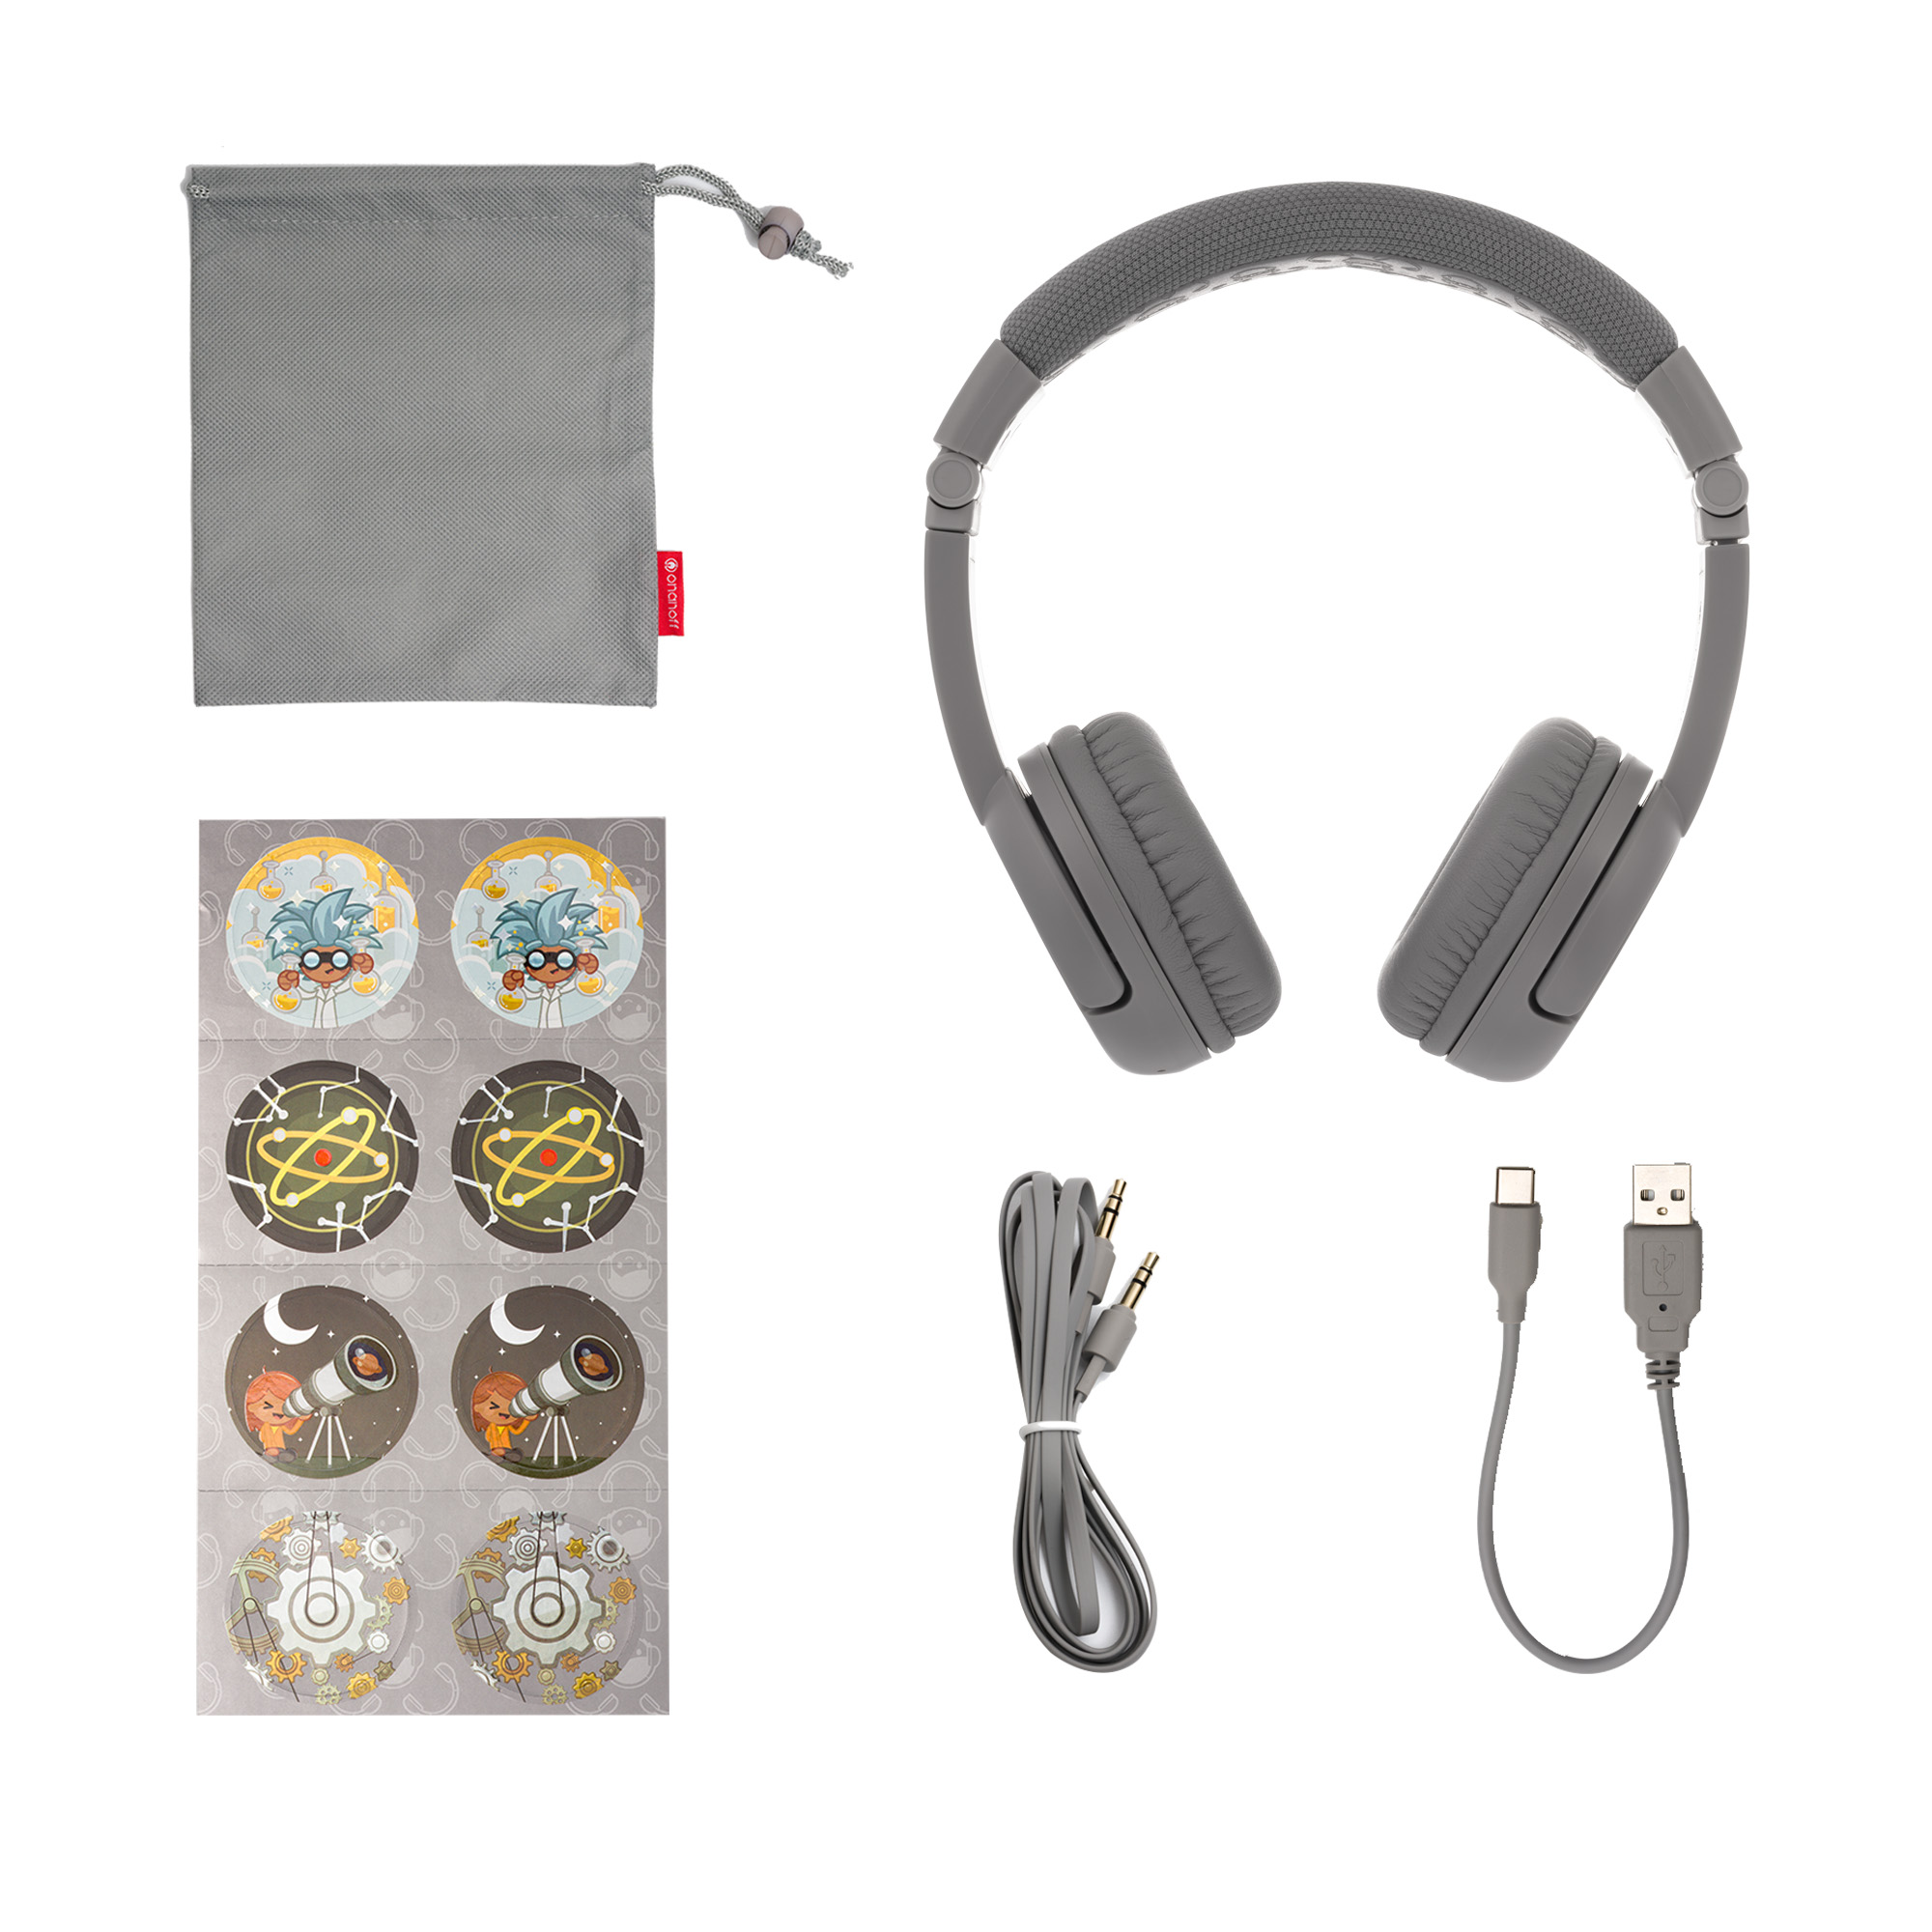 BUDDYPHONES Kinder Play On-ear Plus, Bluetooth Grau Kopfhörer